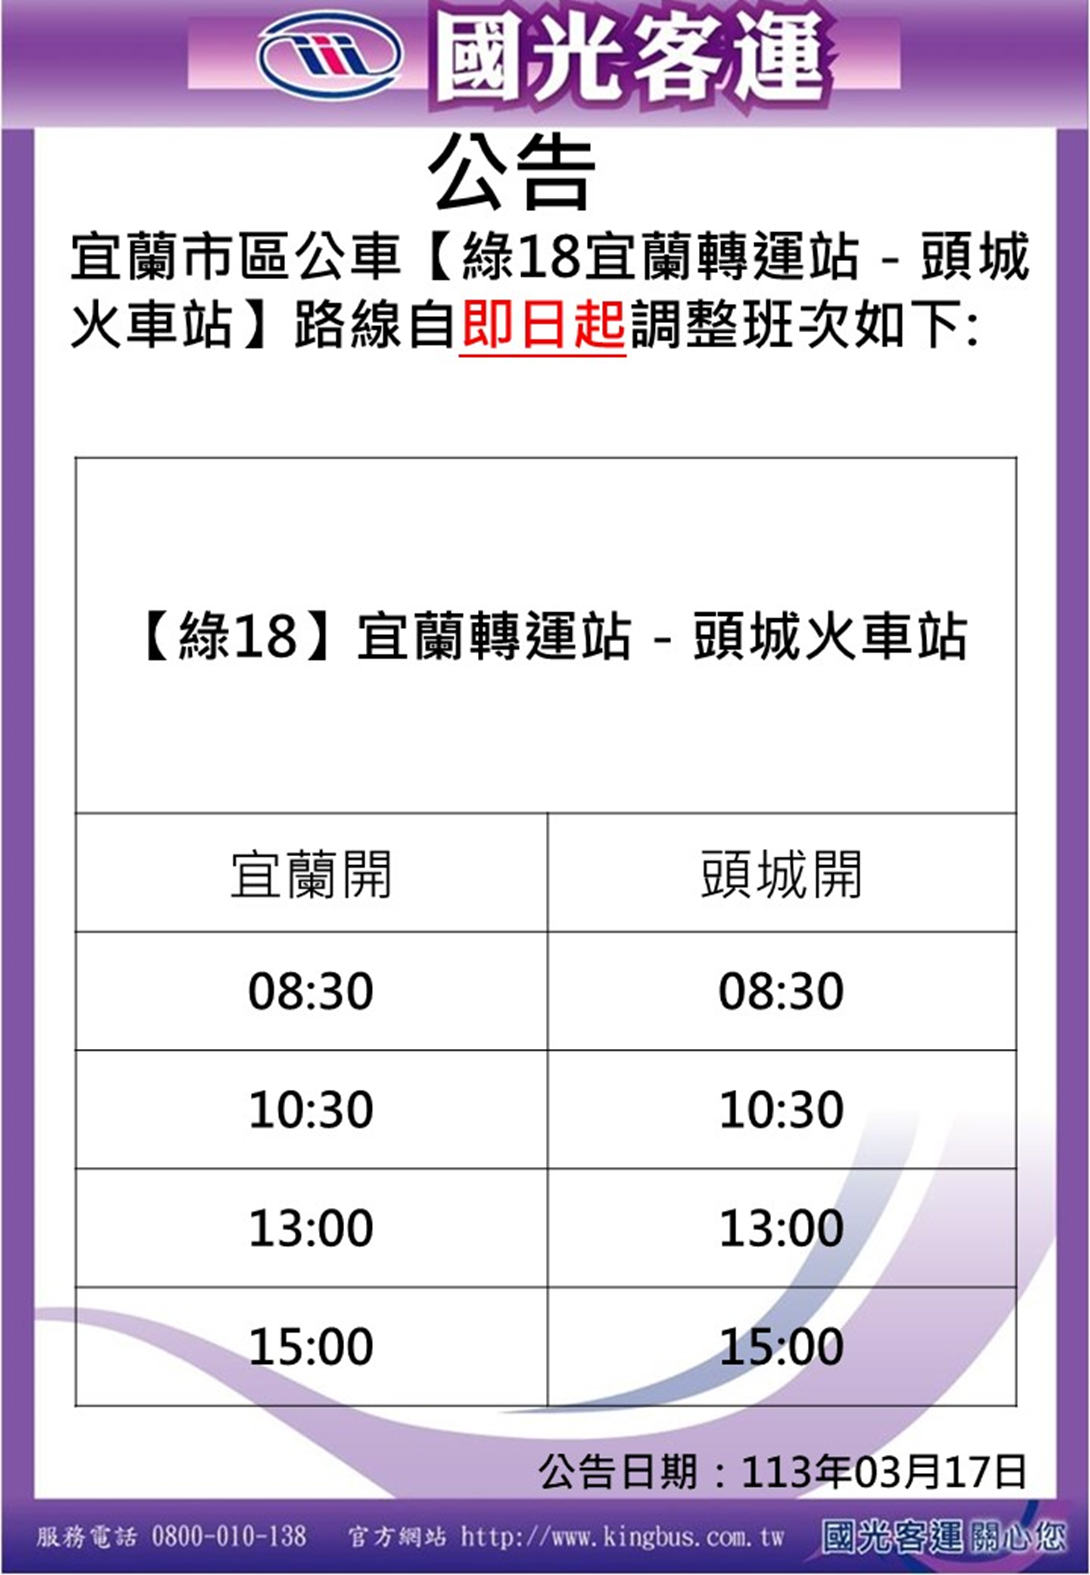 Изменения в расписании автобусов Тайвань Hao Xing Green 18 Zhuangwei Dune Line